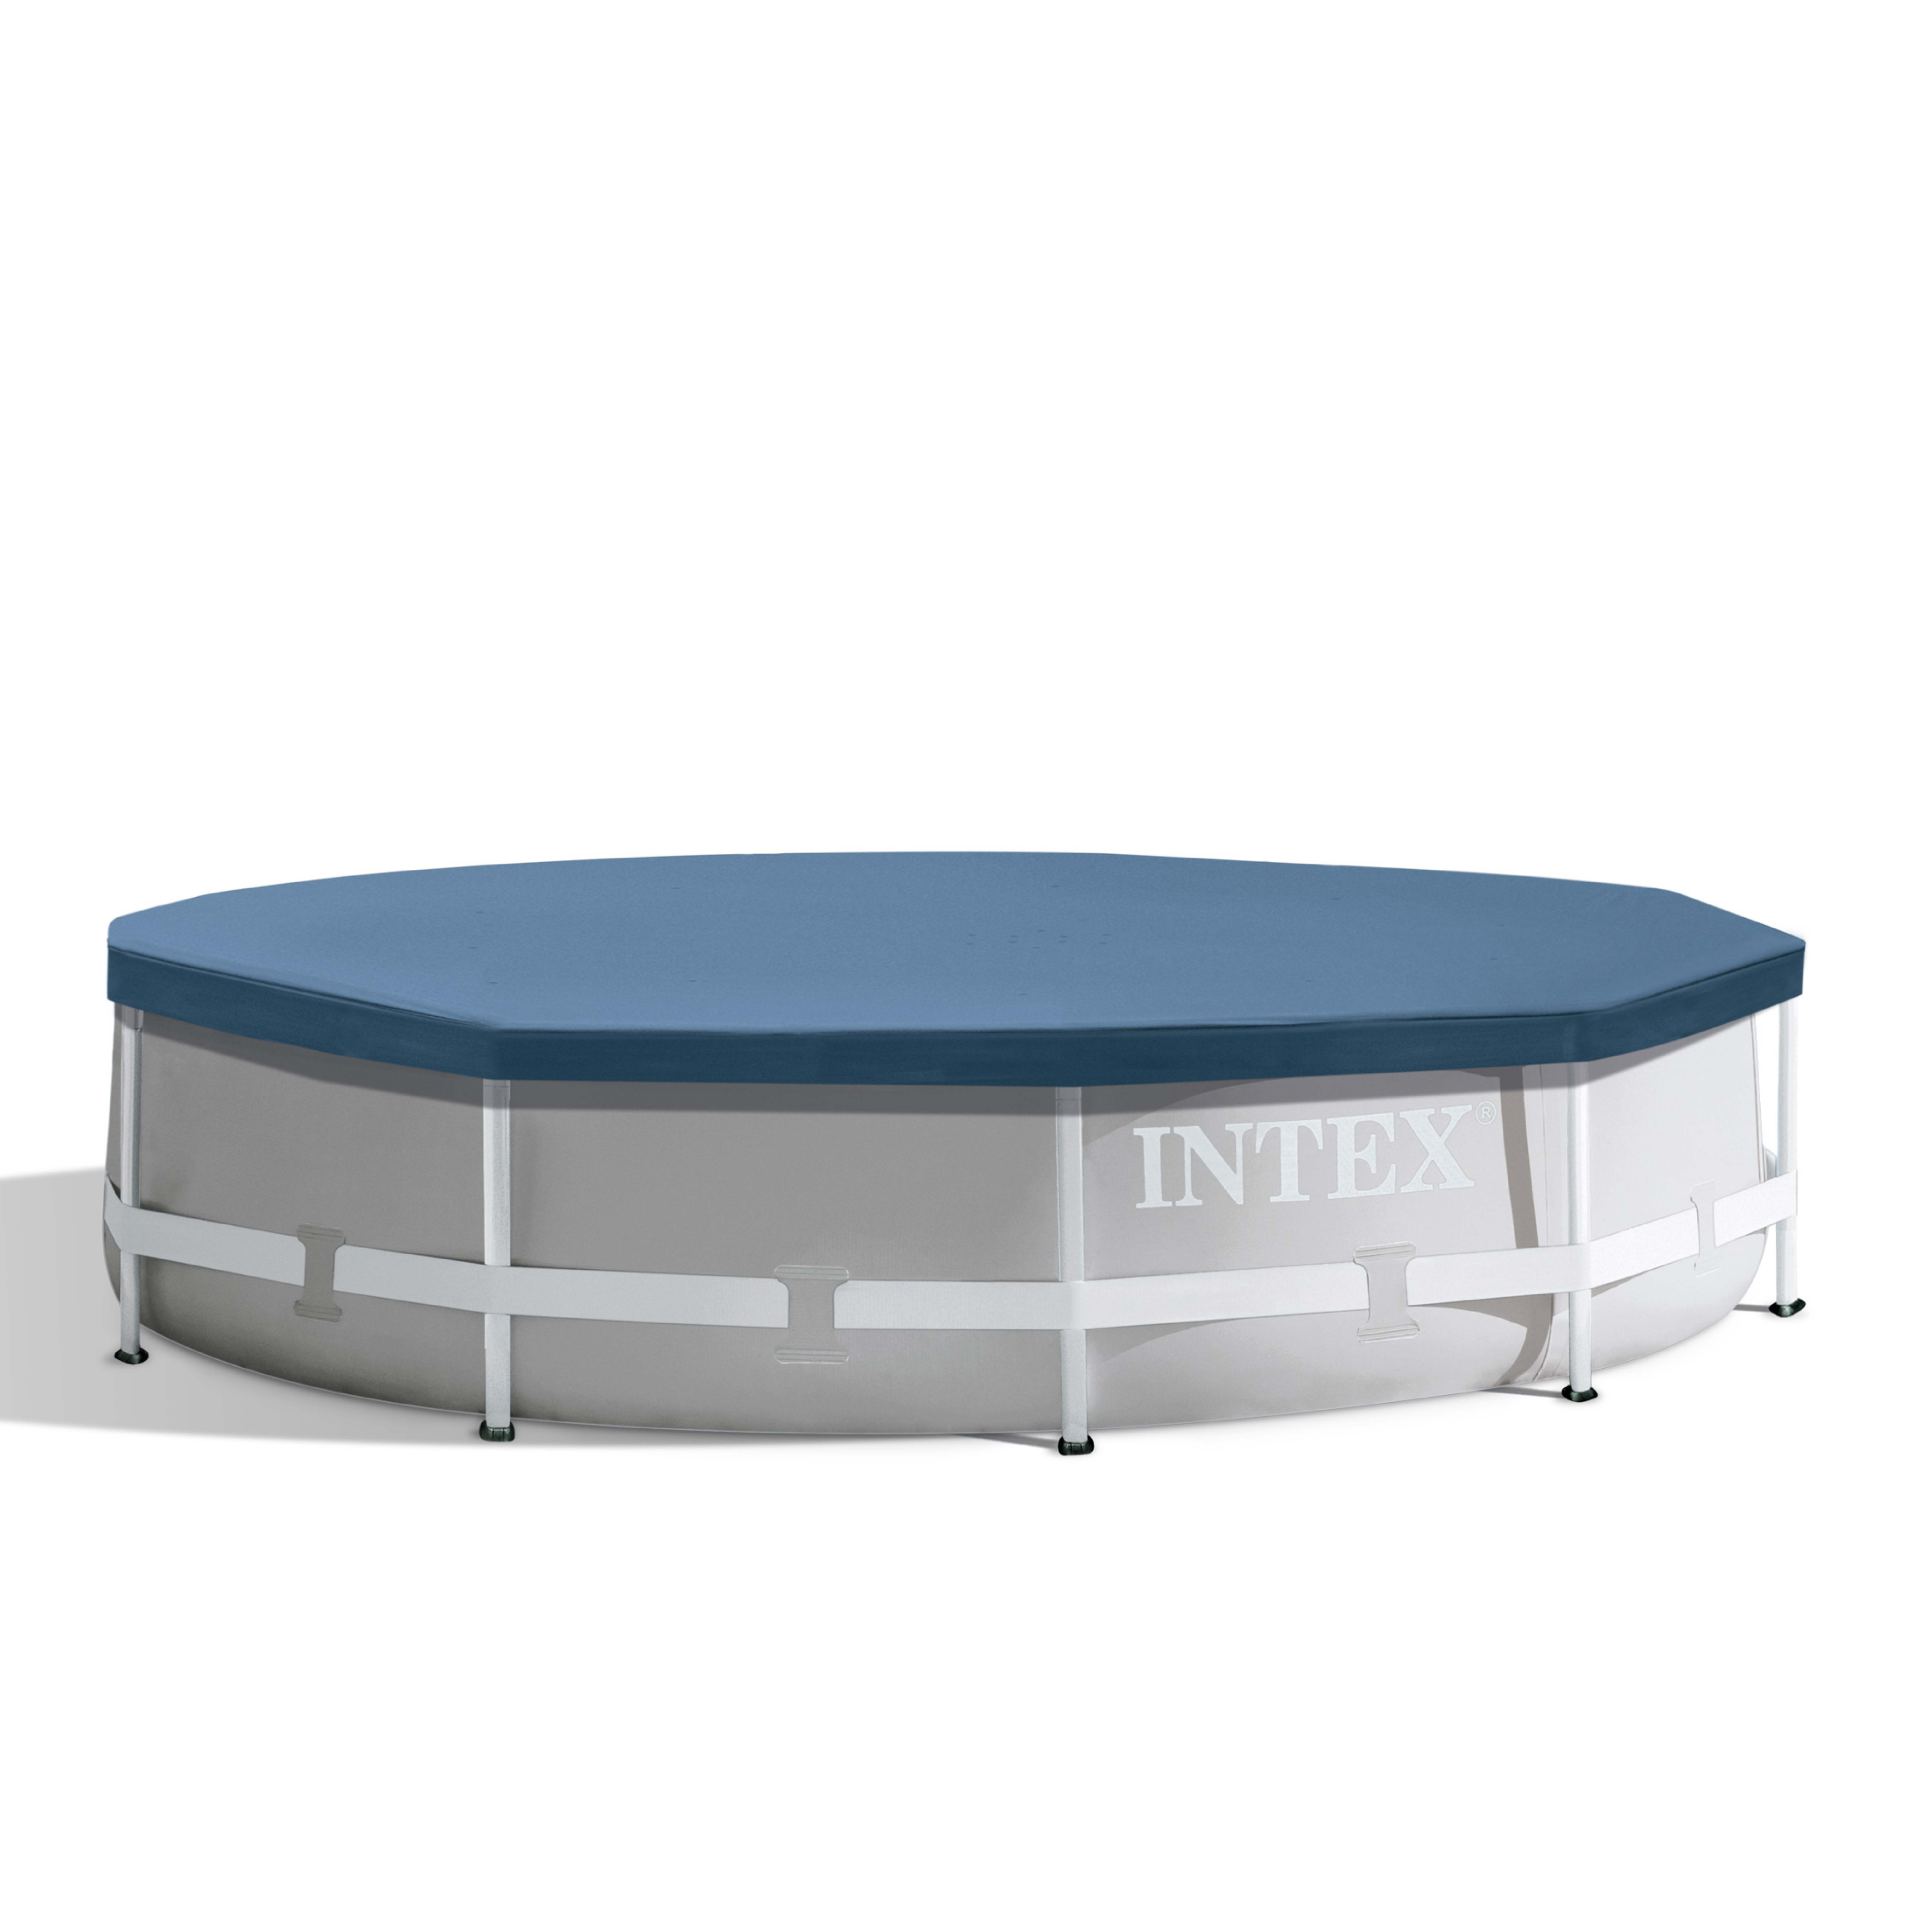 Intex round pool cover 305cm x 25cm